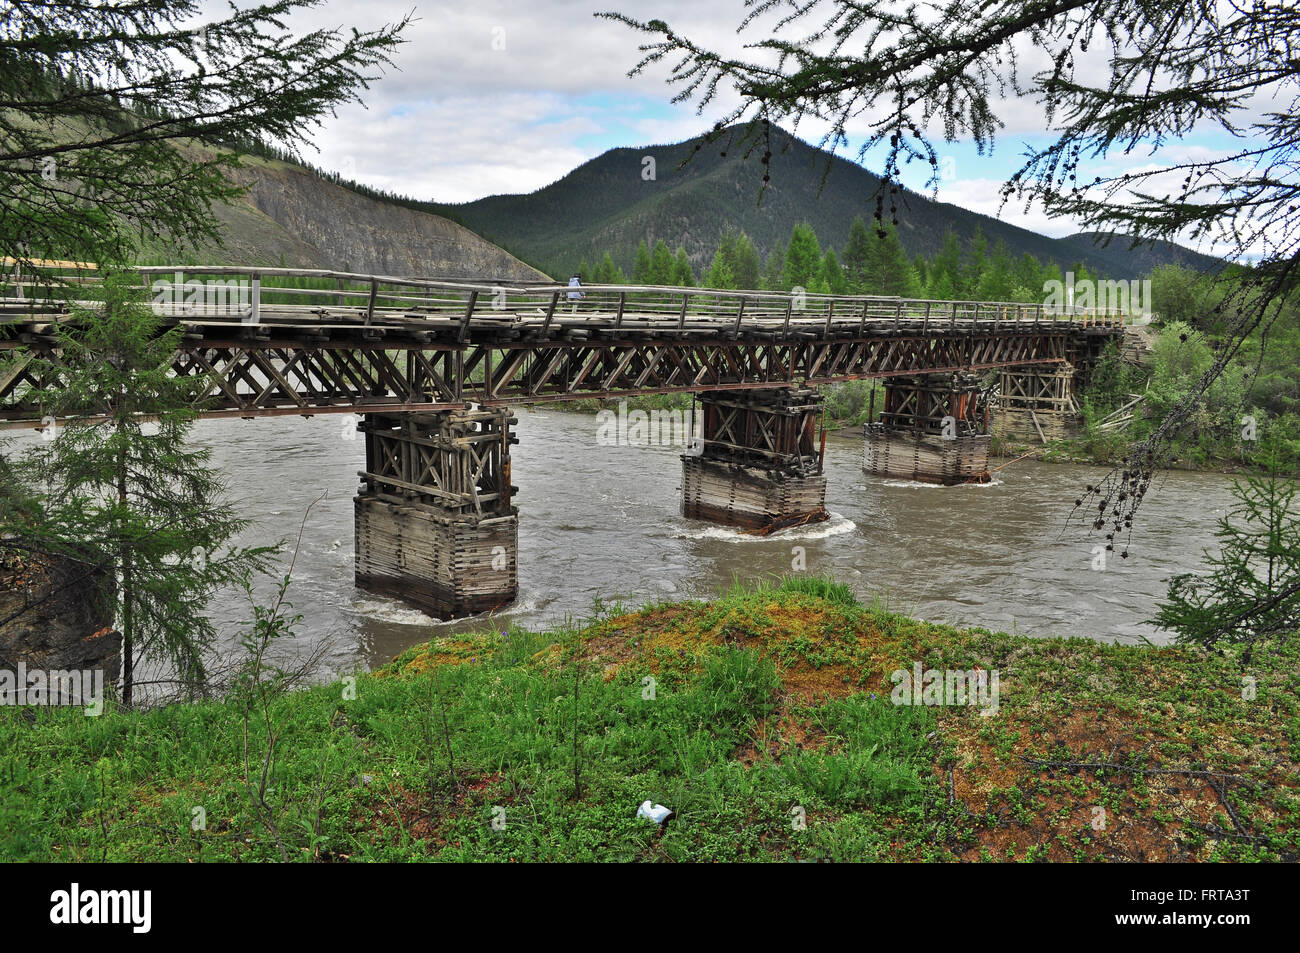 La autopista federal 'Kolima' cruza el río Suntar sobre el puente de madera. Foto de stock